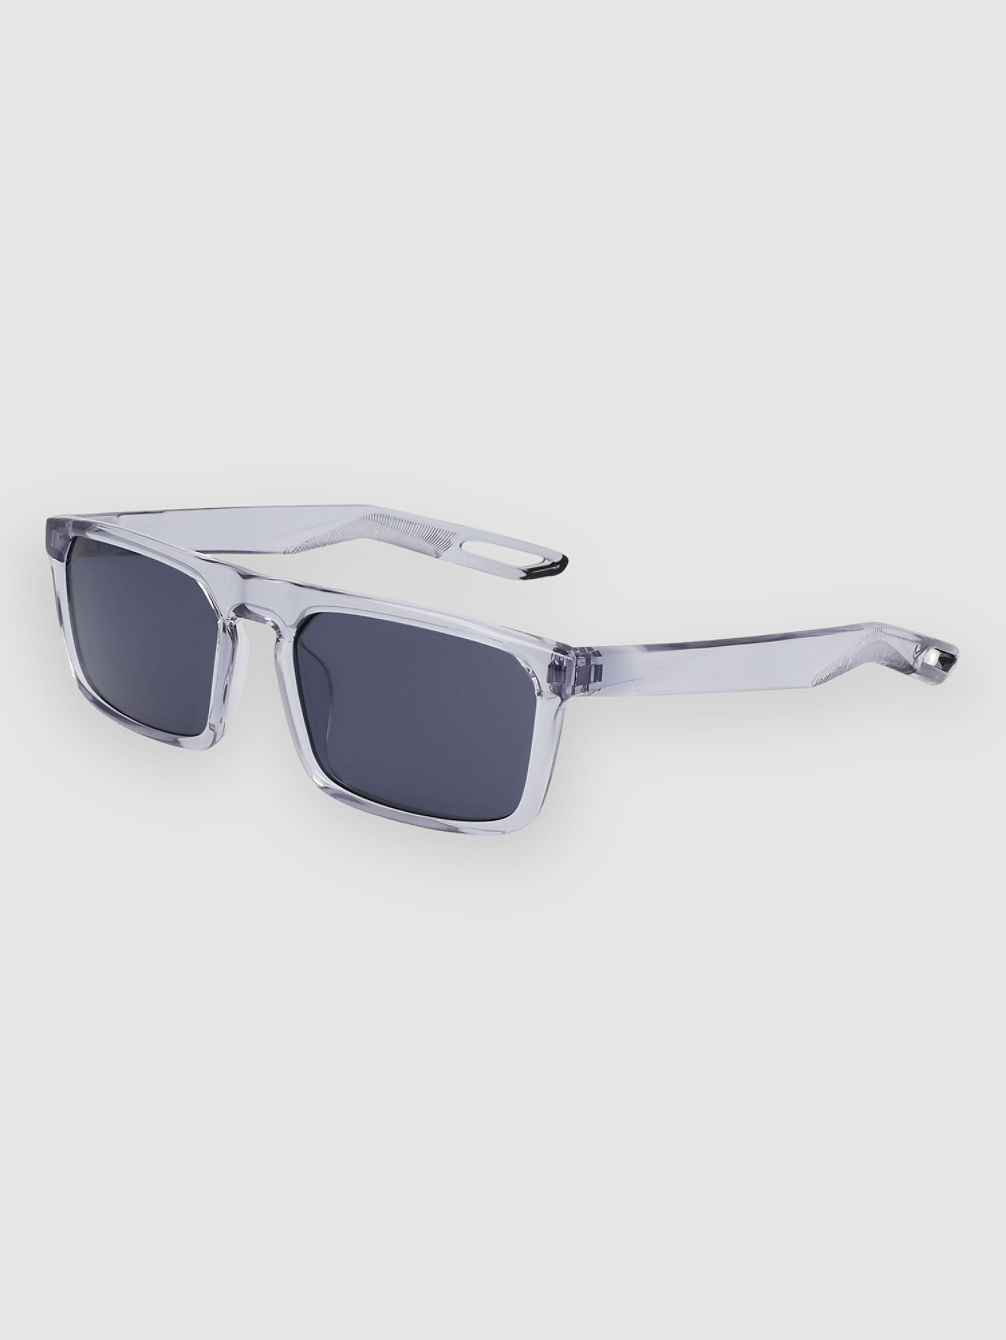 Nv03 Wolf Grey Solbriller